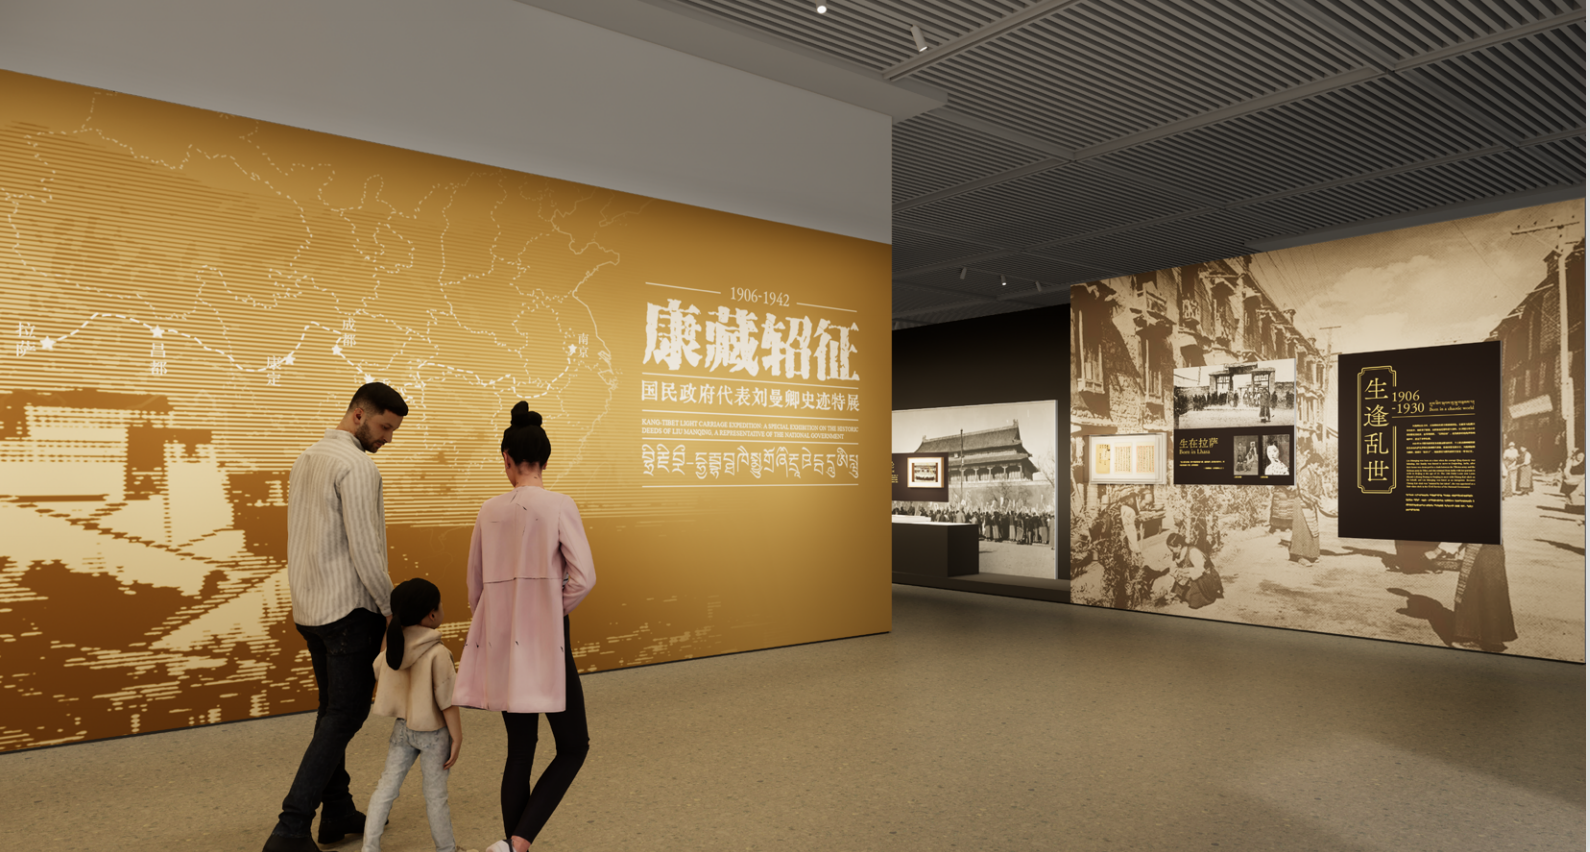 太一中标 | 西藏博物馆——“康藏轺征—国民政府代表刘曼卿史迹特展”项目